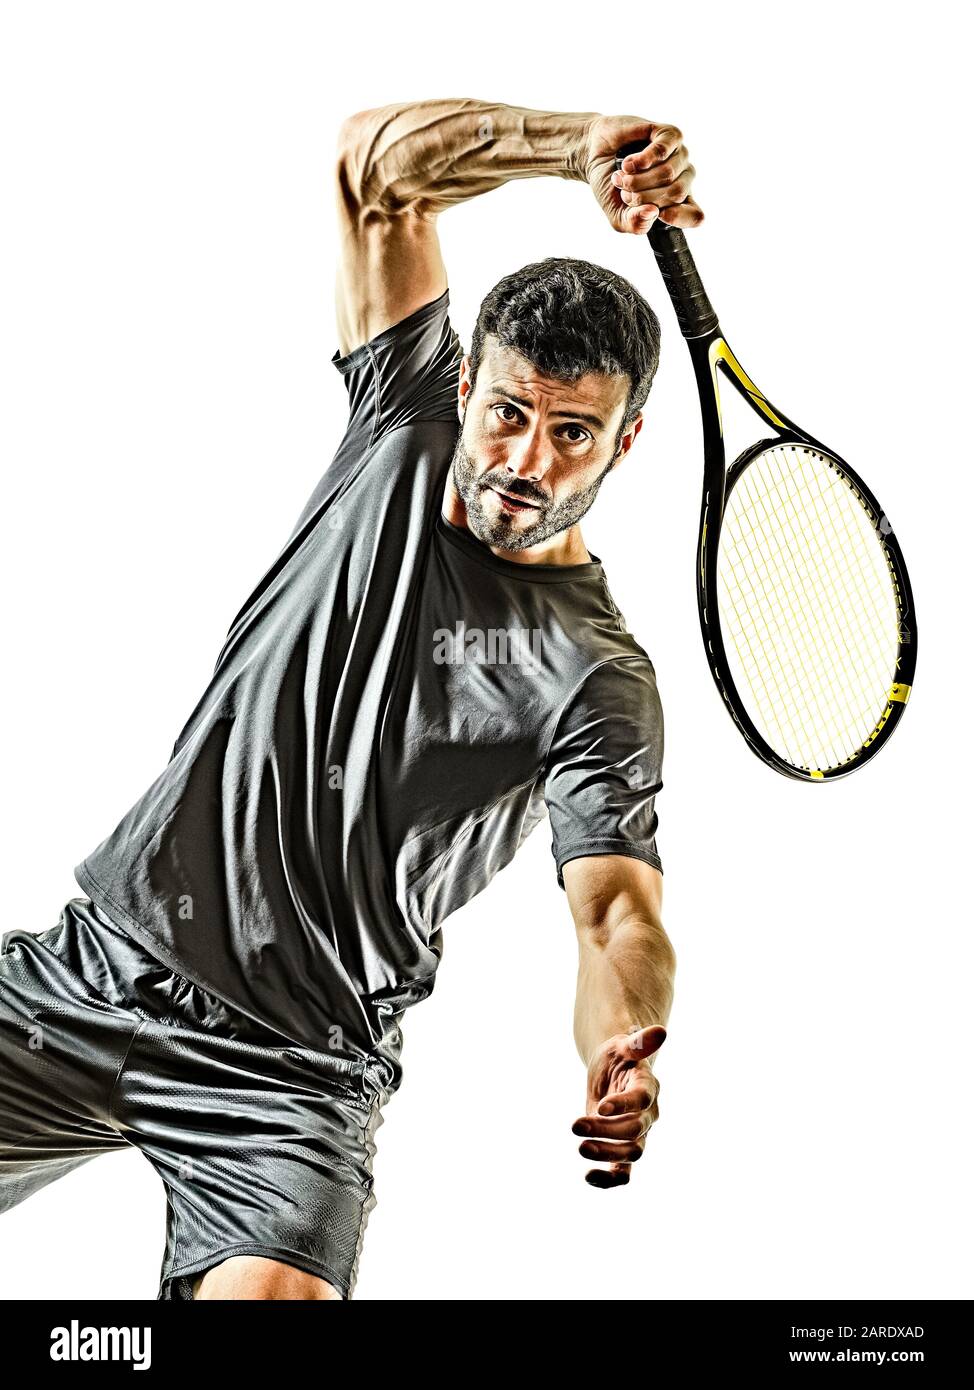 un joueur de tennis mûr caucasien homme vue avant du front en studio isolé sur fond blanc Banque D'Images